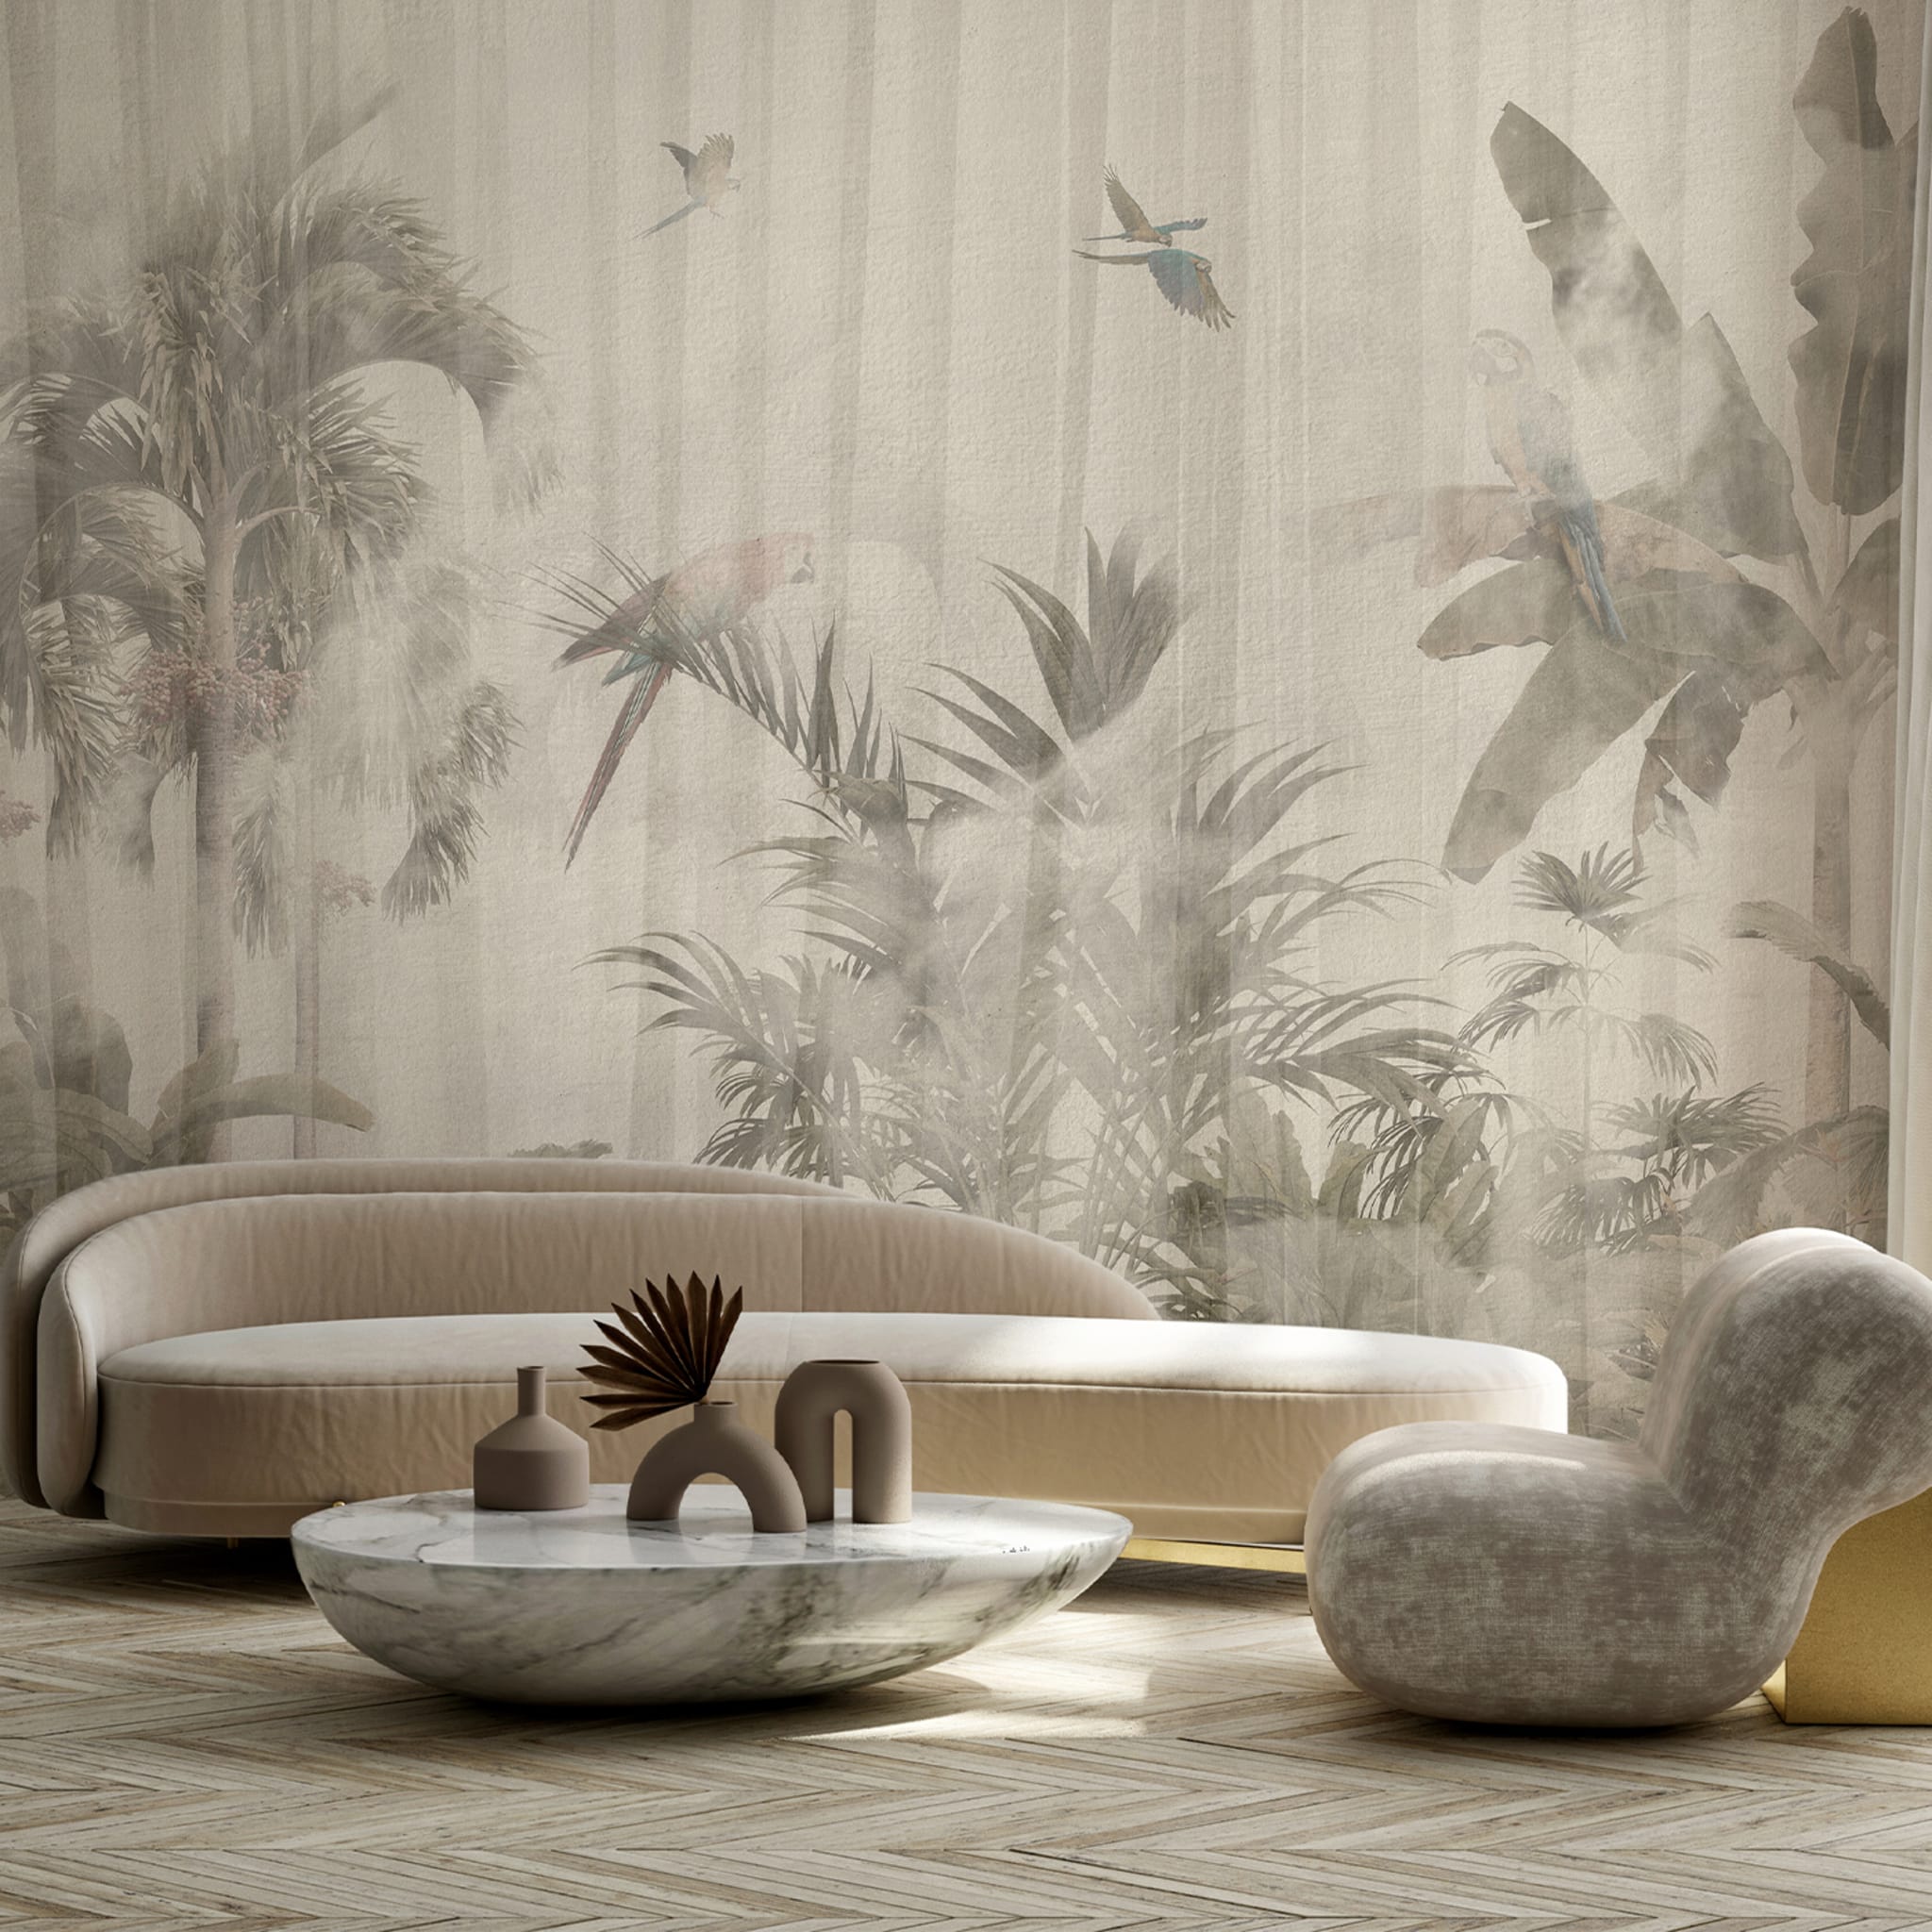 Flying parrots beige textured wallpaper - Alternative view 1